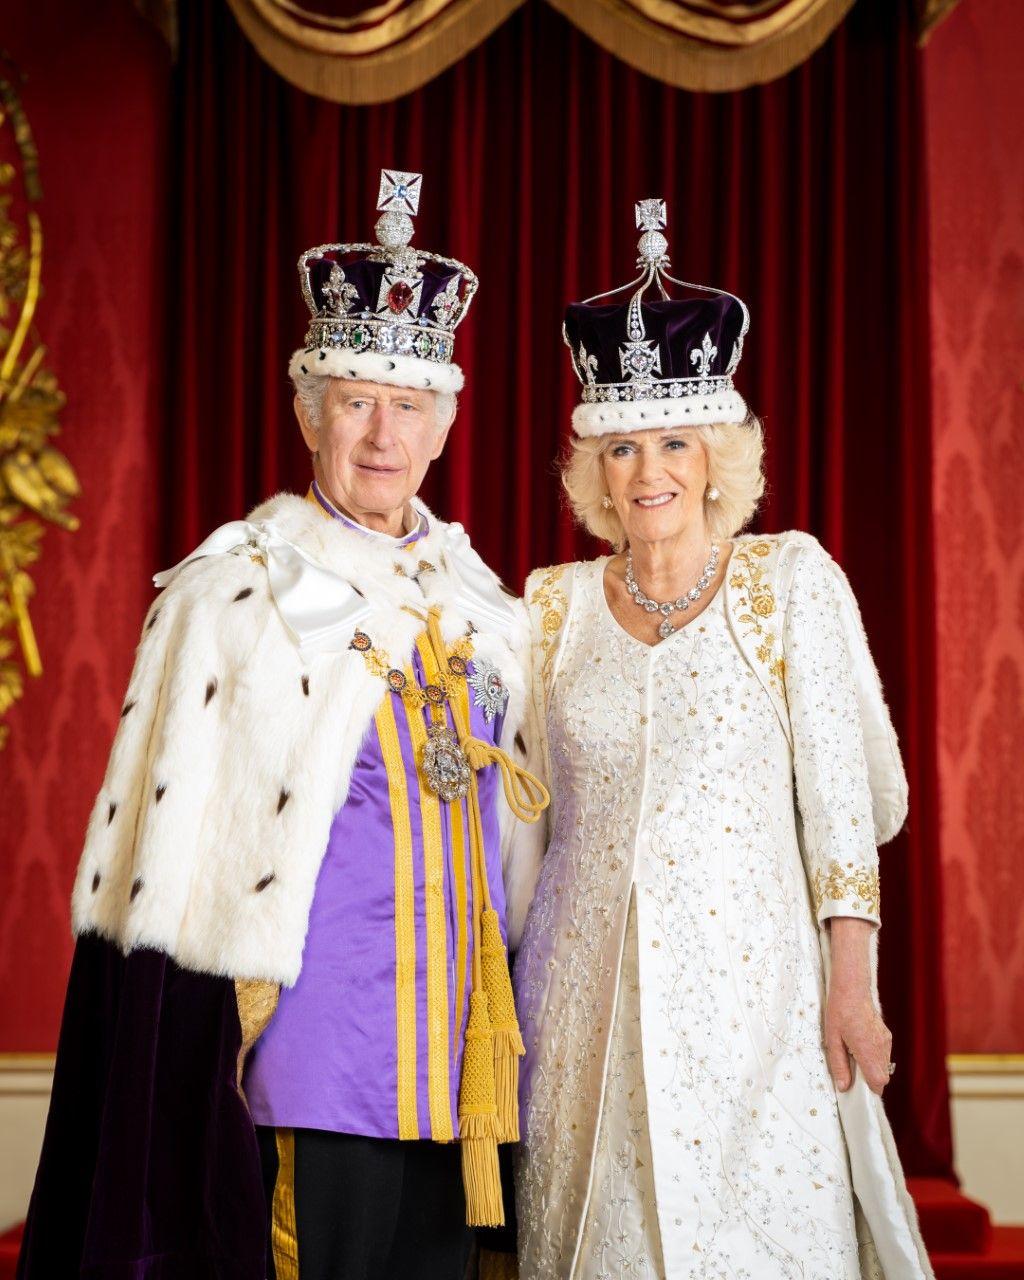 Fotografie nafotil fotograf Hugo Burnand v Buckinghamskom paláci v deň korunovácie, 6. mája.